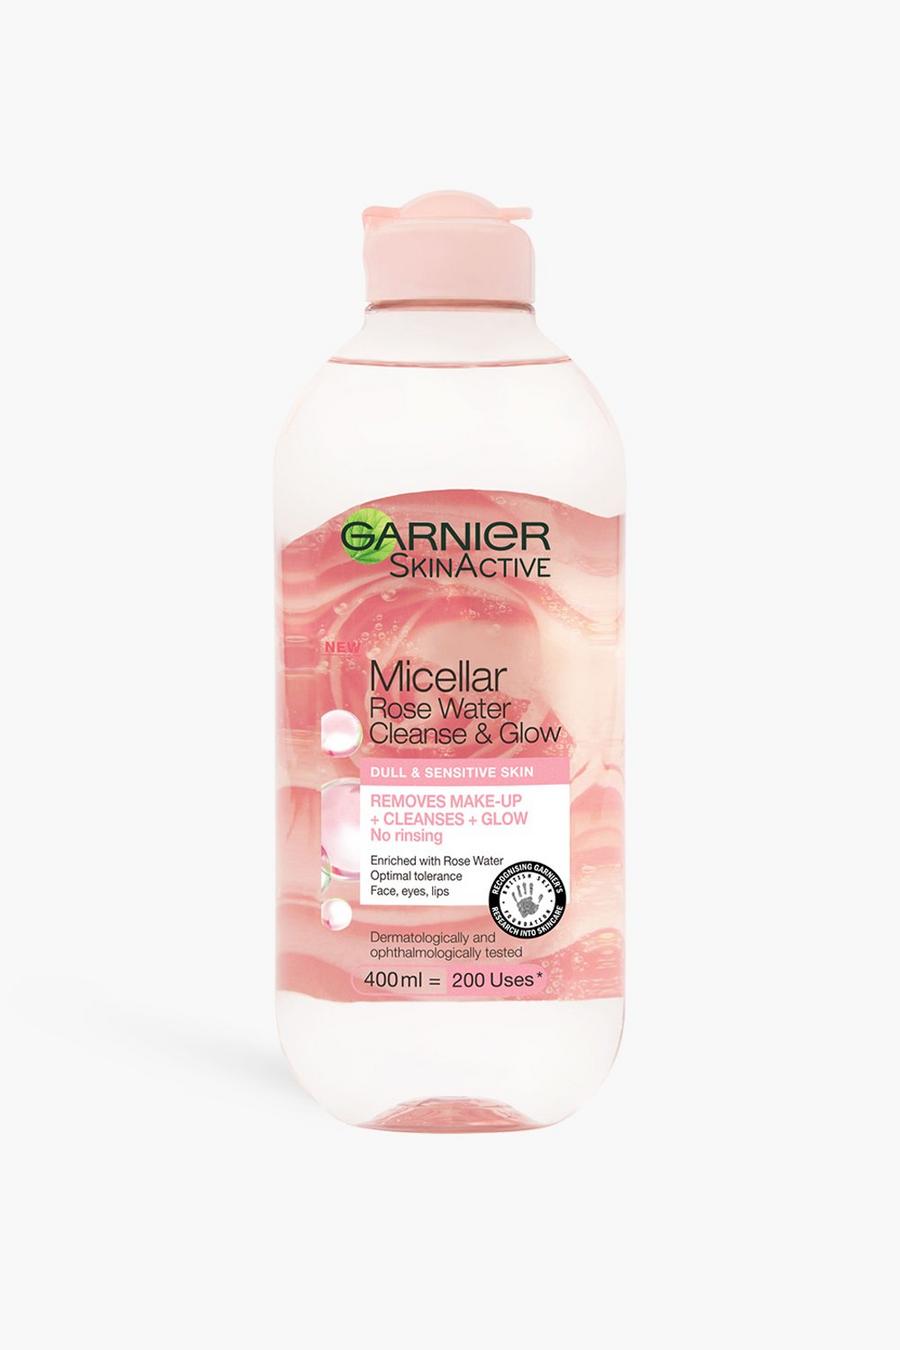 Baby pink Garnier Micellar Rose Water Cleanse & Glow